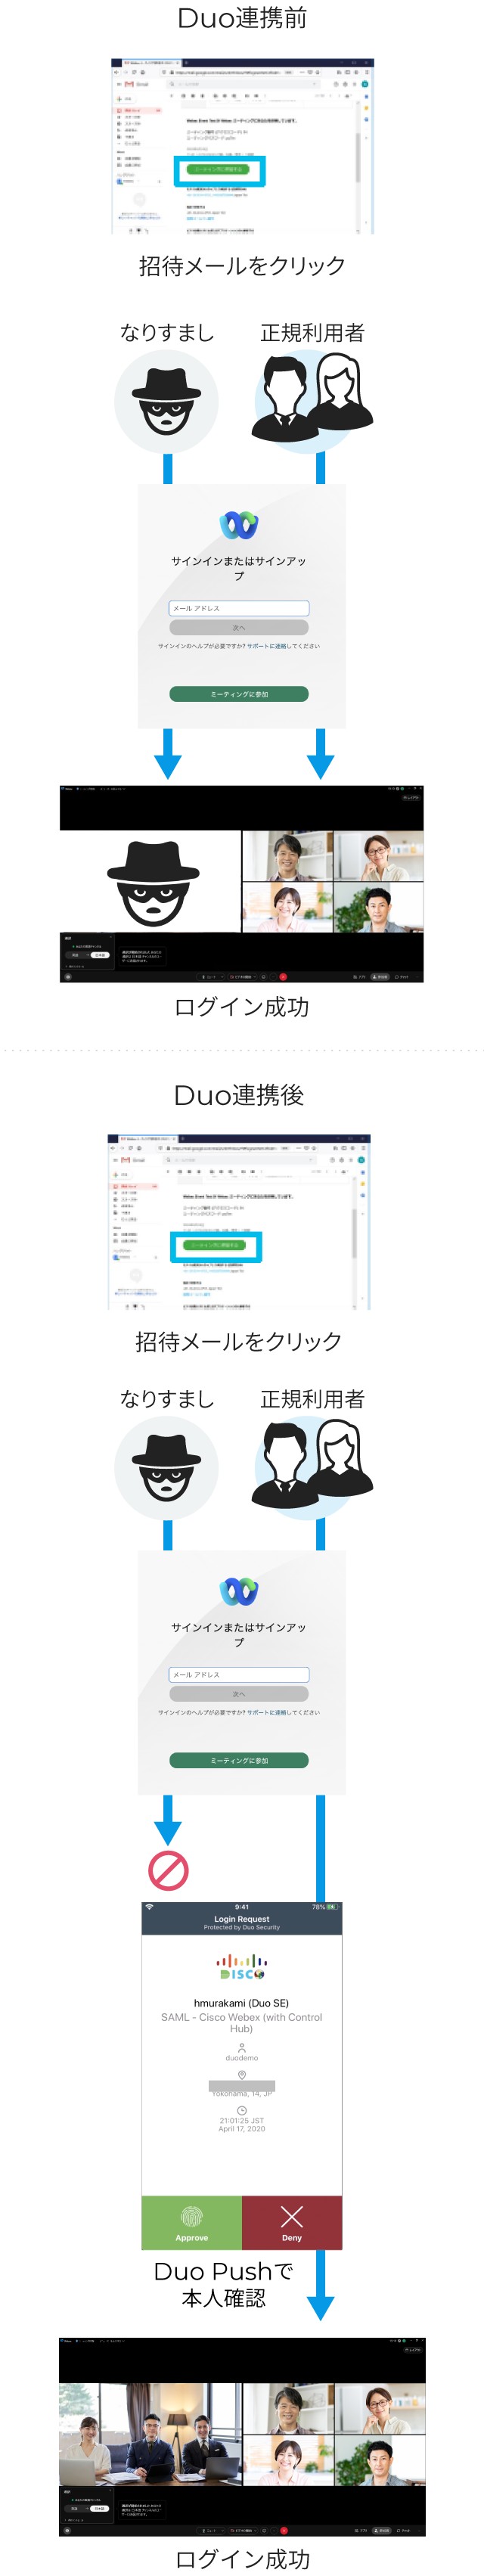 Duoの連携で認証に成功したユーザーのみが会議に参加可能